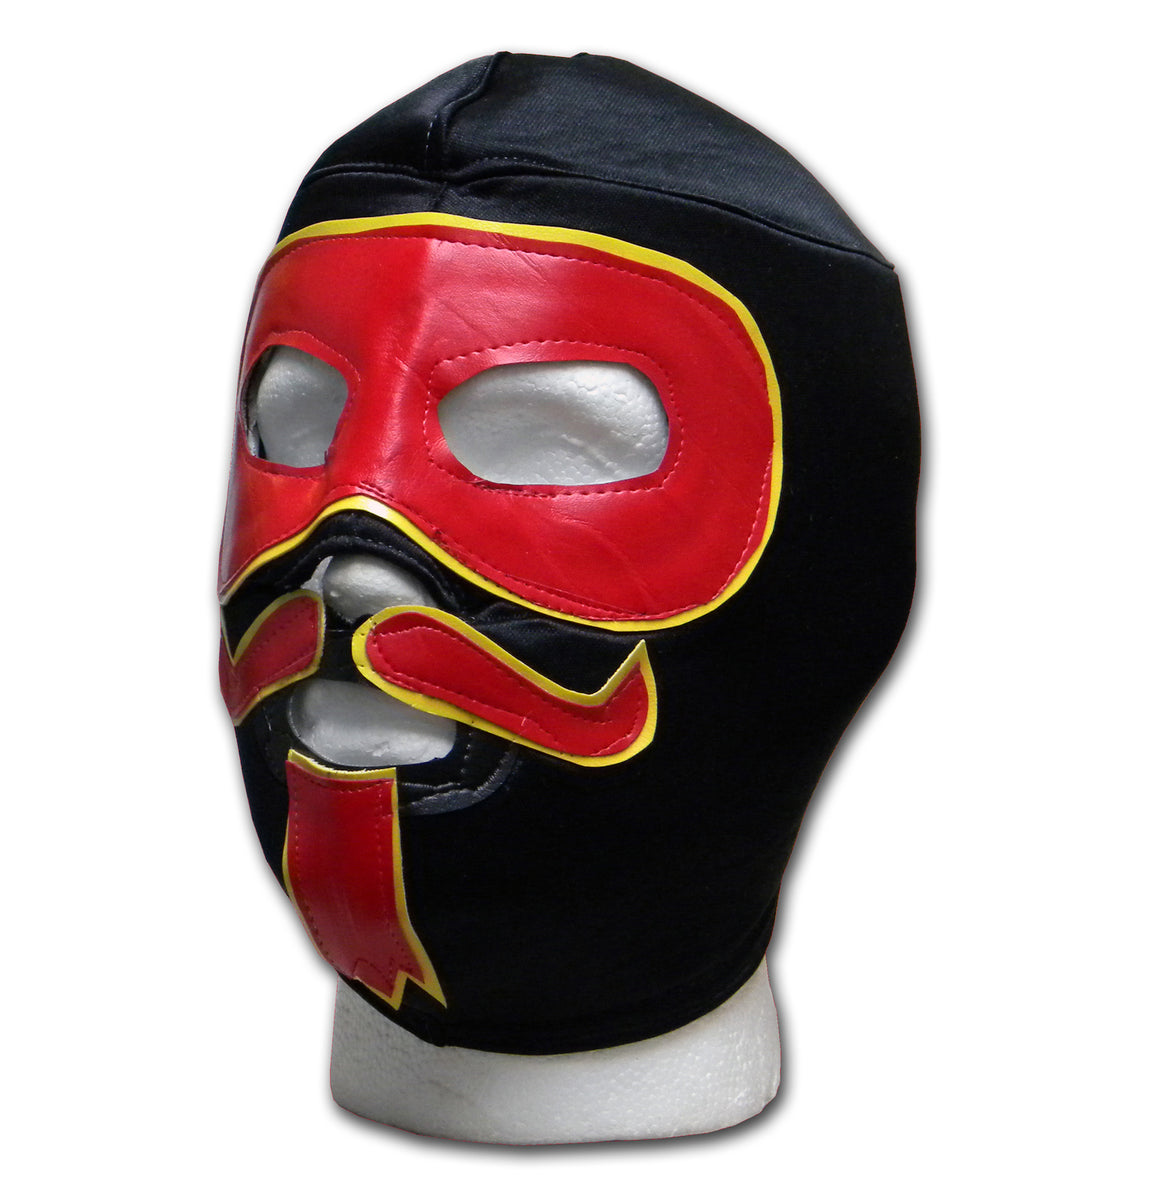 Luchadora Bandito Adult Luchador Wrestling Mask Lucha Libre – ICHNOS SPORTS